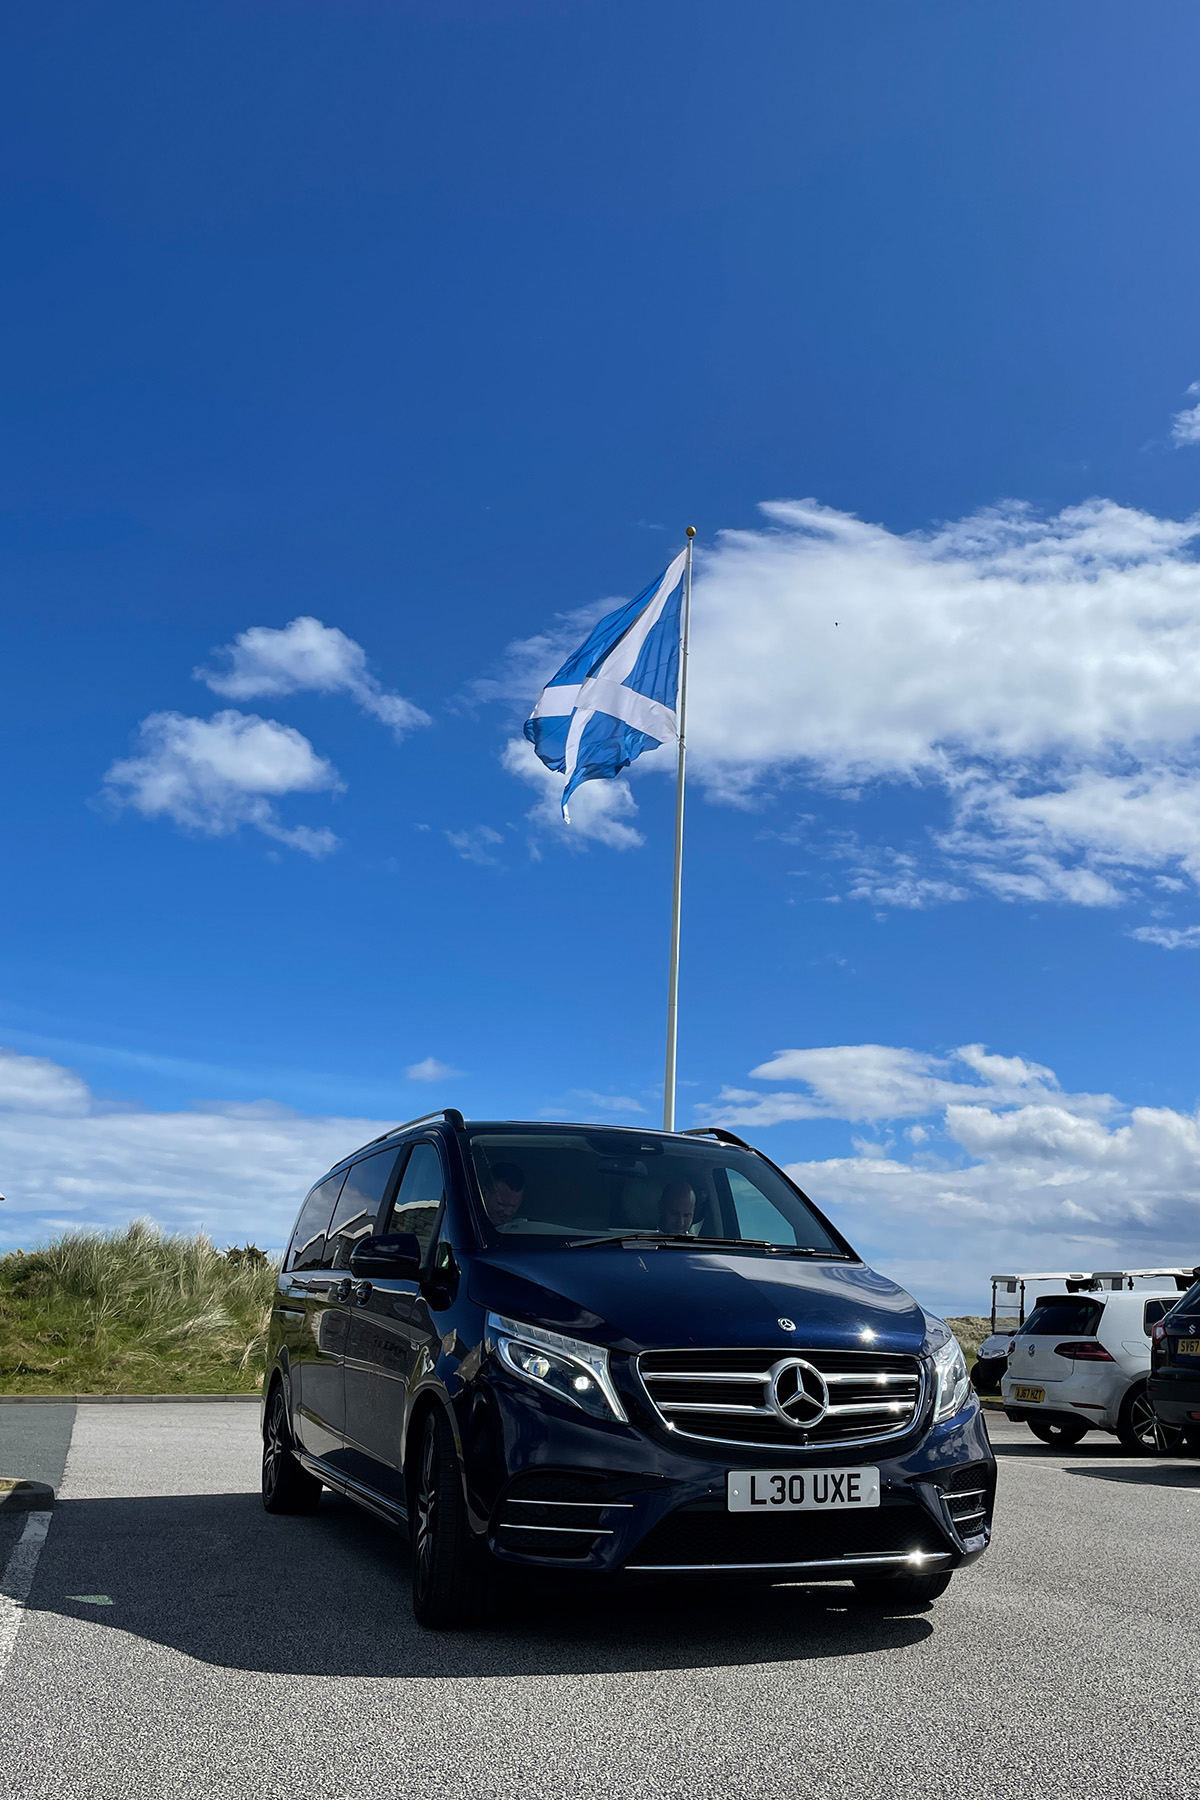 Mercedes Jet Class, Scotland Flag - Luxe Scot